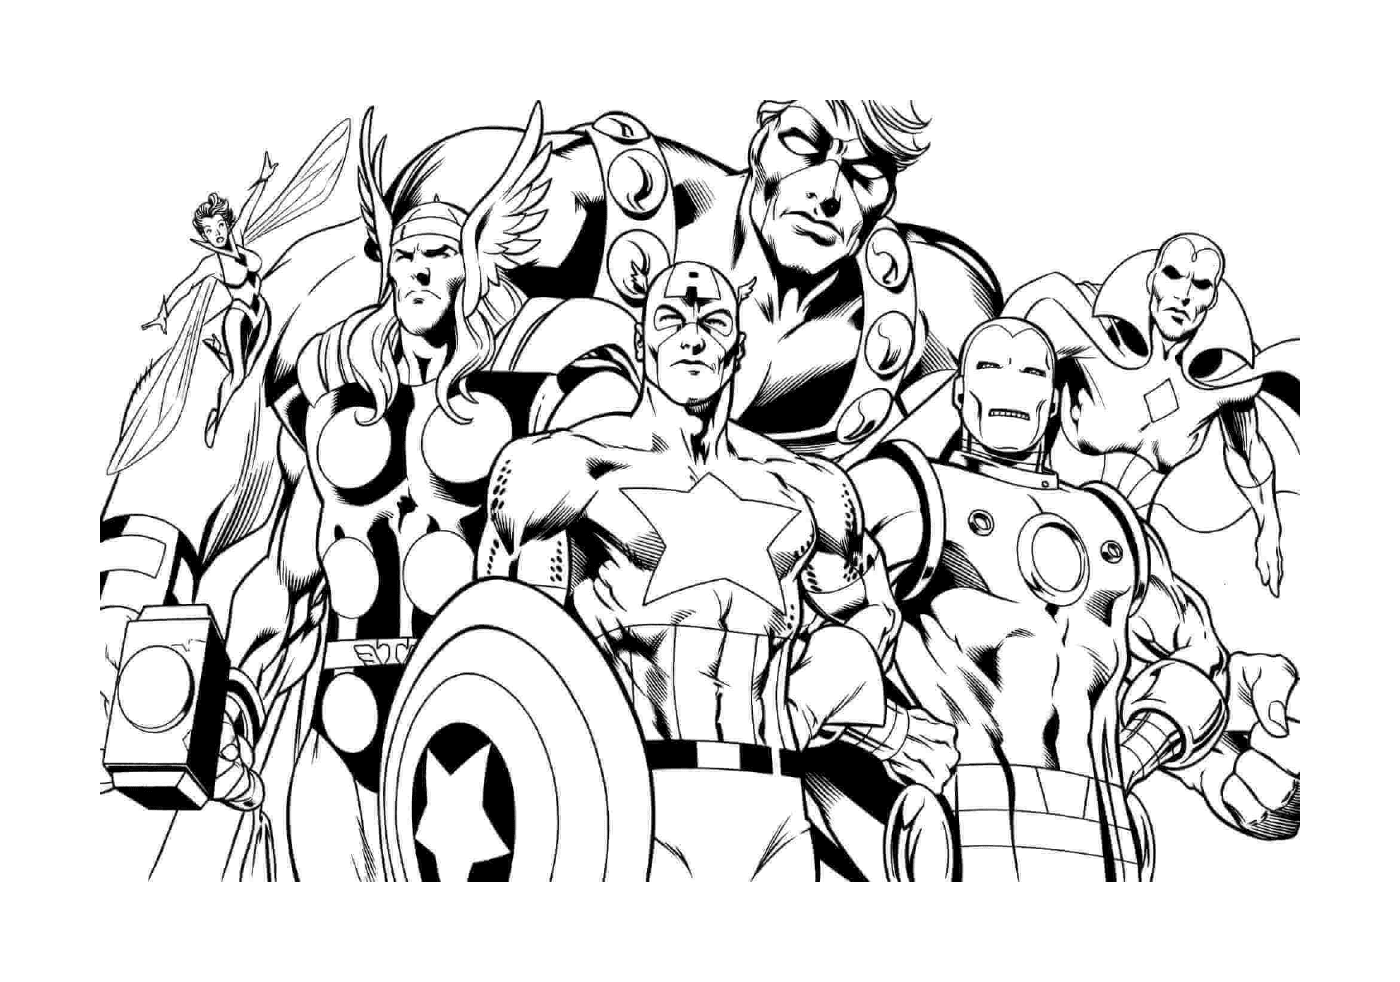   Les Avengers, groupe de héros 